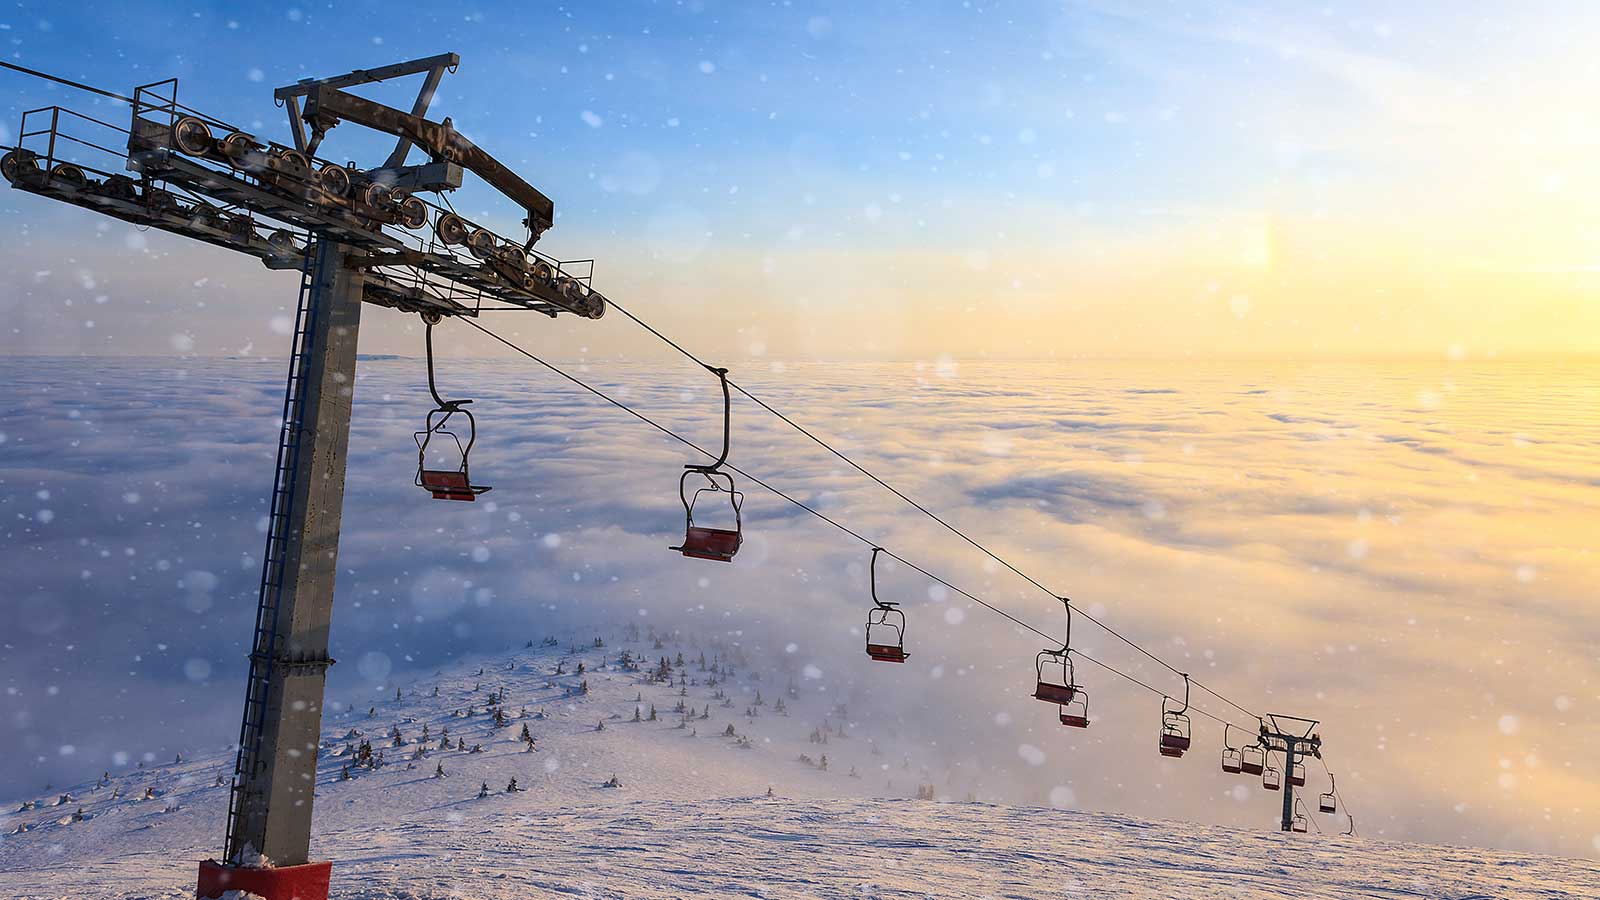 Uludağ. Prožijte lyžování na turecké hoře legend